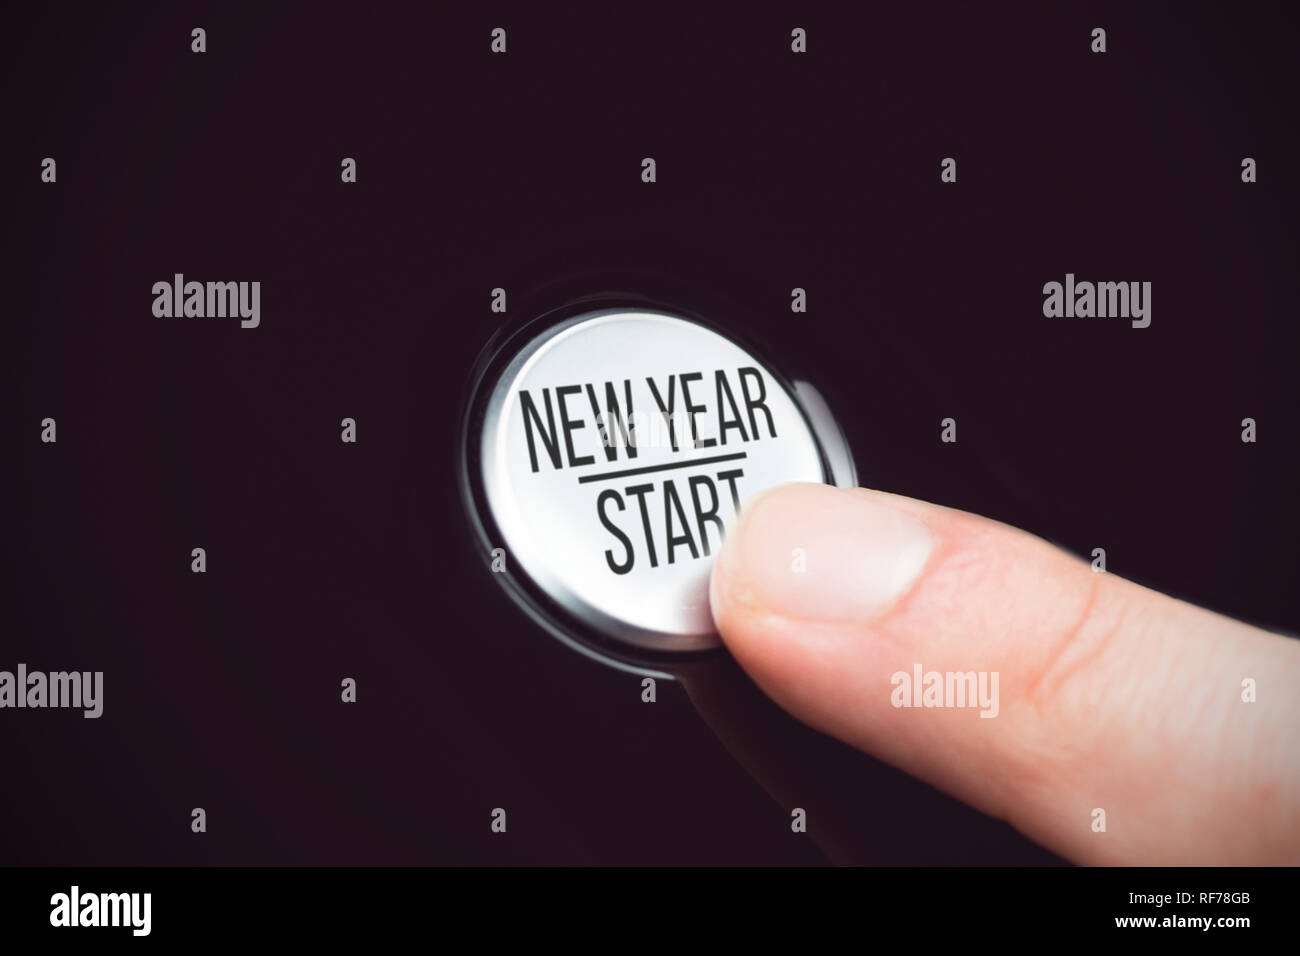 Immagine composita di anno nuovo inizio nella lettera maiuscola Foto Stock